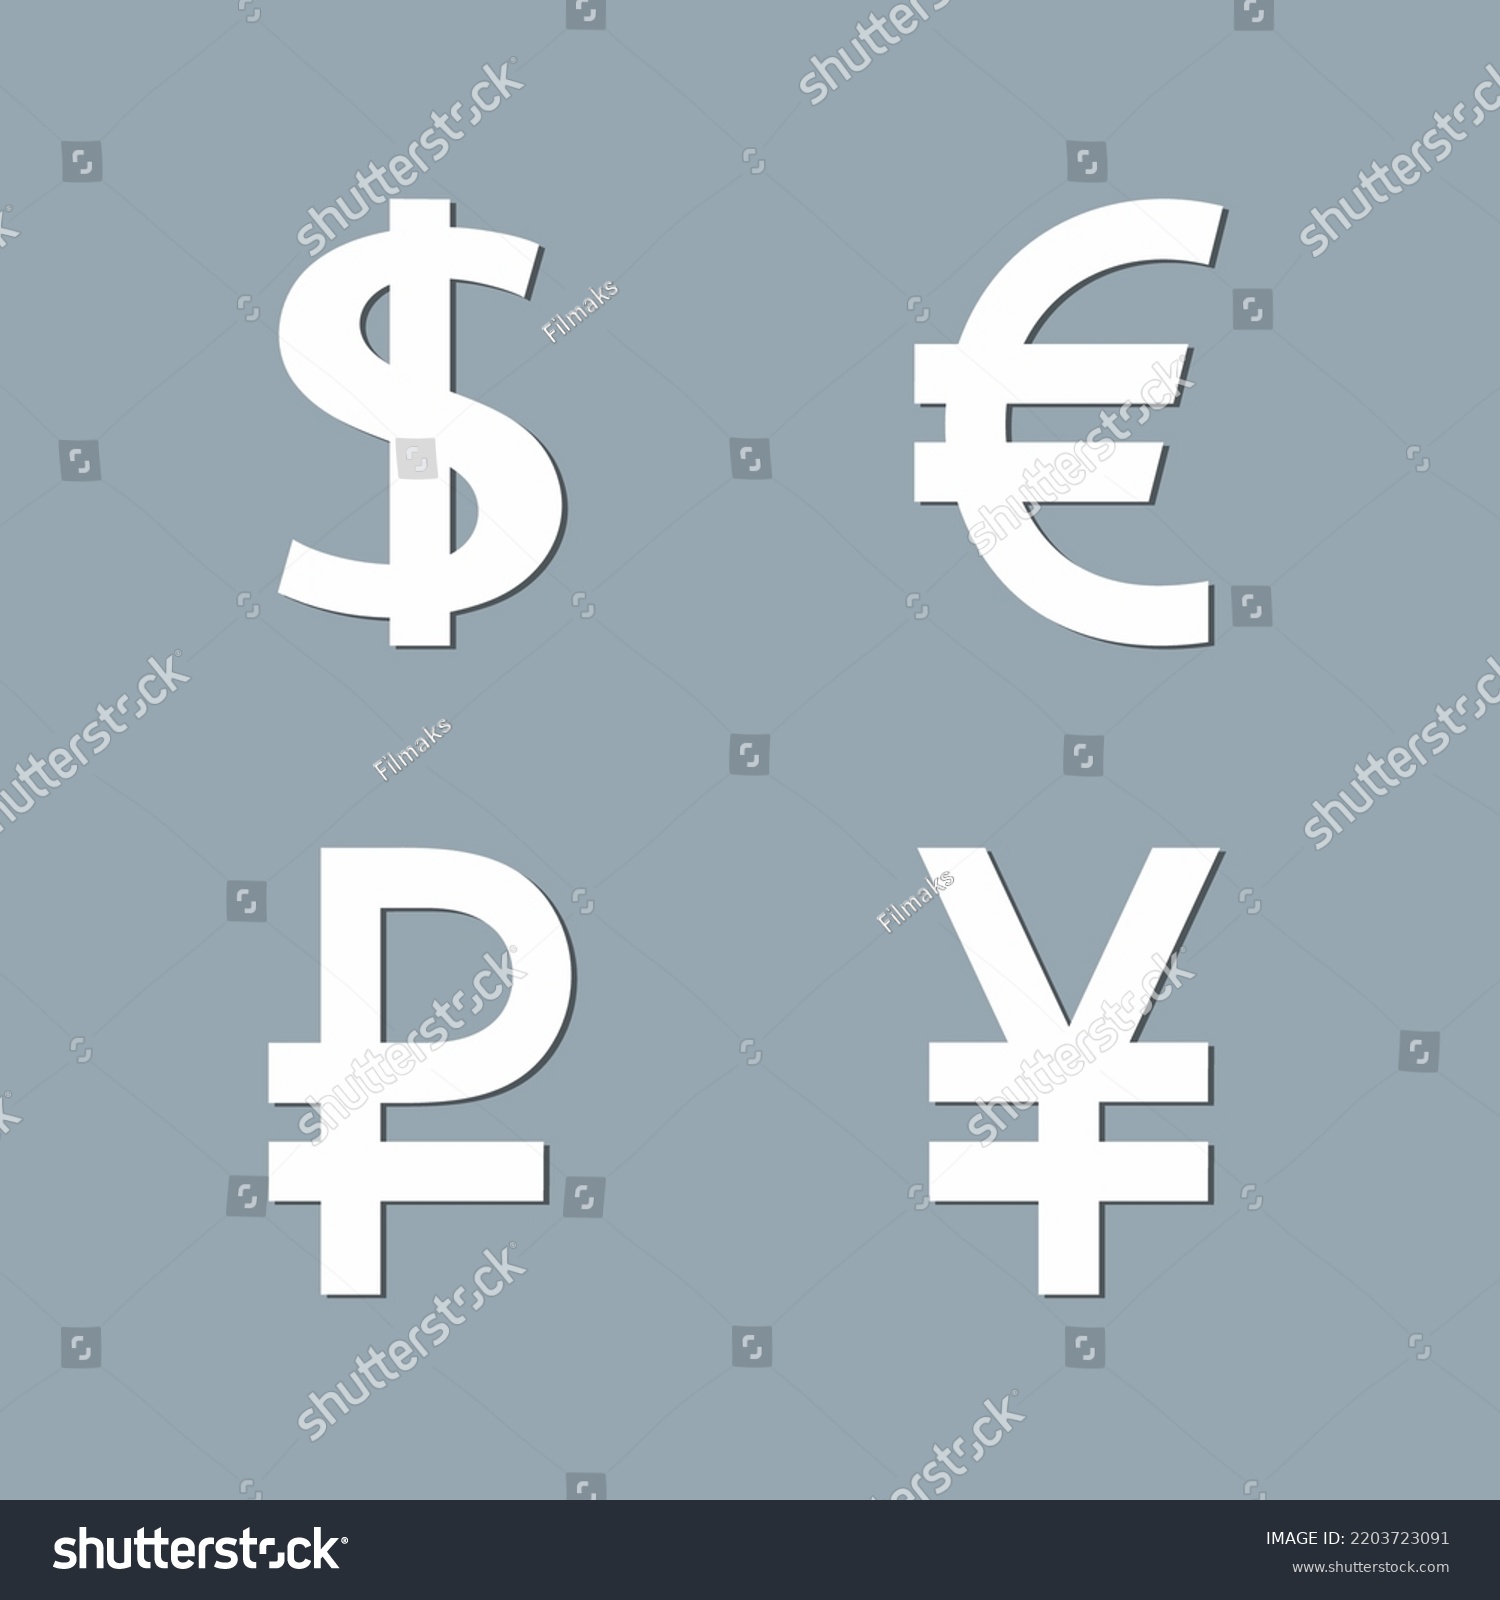 Símbolos Monetarios Euro Dólar Yenes Calidad Vector De Stock Libre De Regalías 2203723091 5252